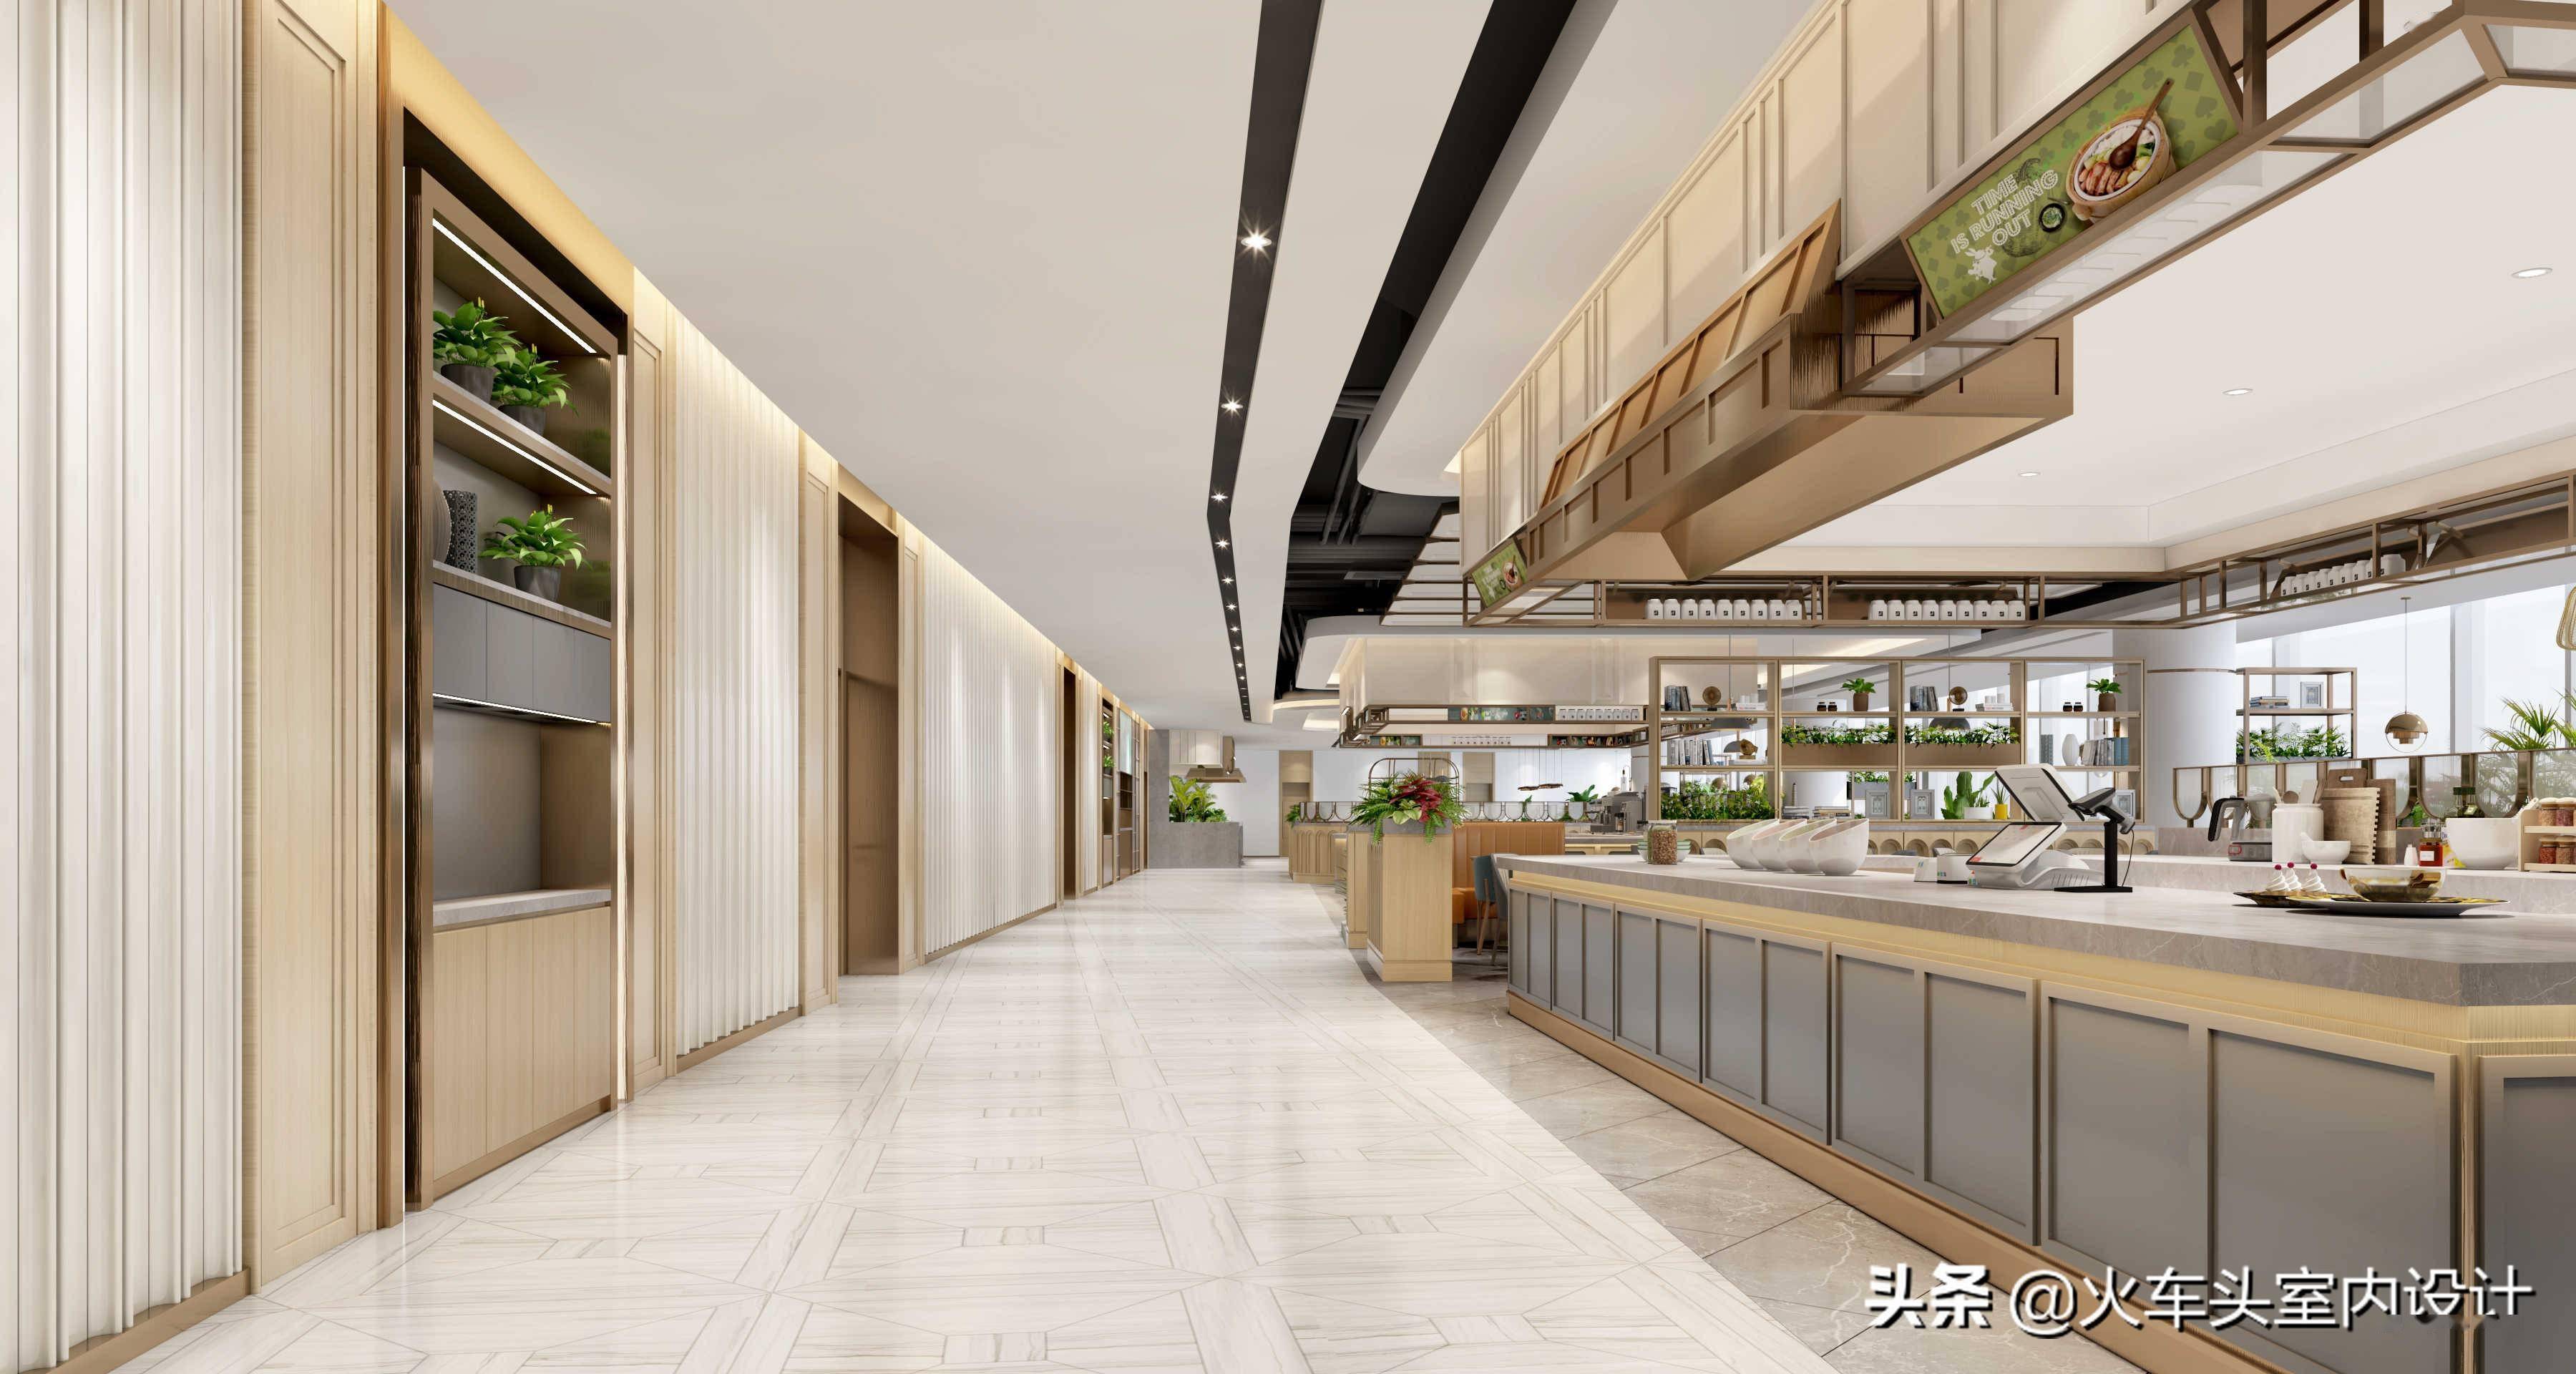 金枫设计|华为北京研究所员工餐厅 - 商业空间设计 - 武汉金枫荣誉室内环境设计有限公司